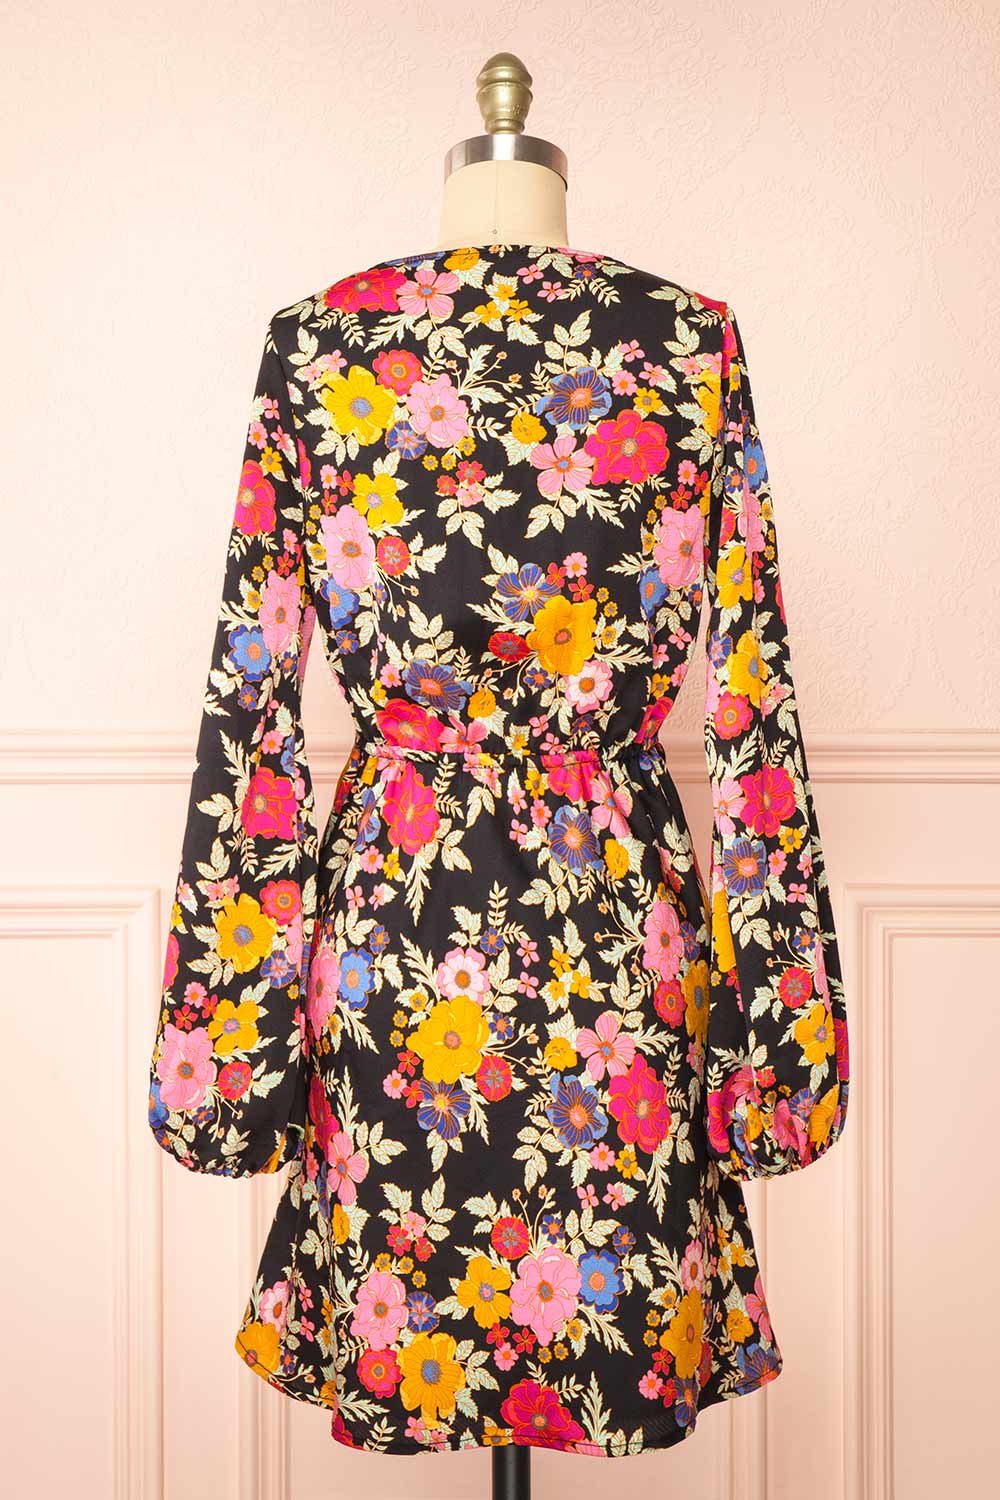 Veradis Black Short Dress w/ Colorful Floral Pattern | Boutique 1861 back view